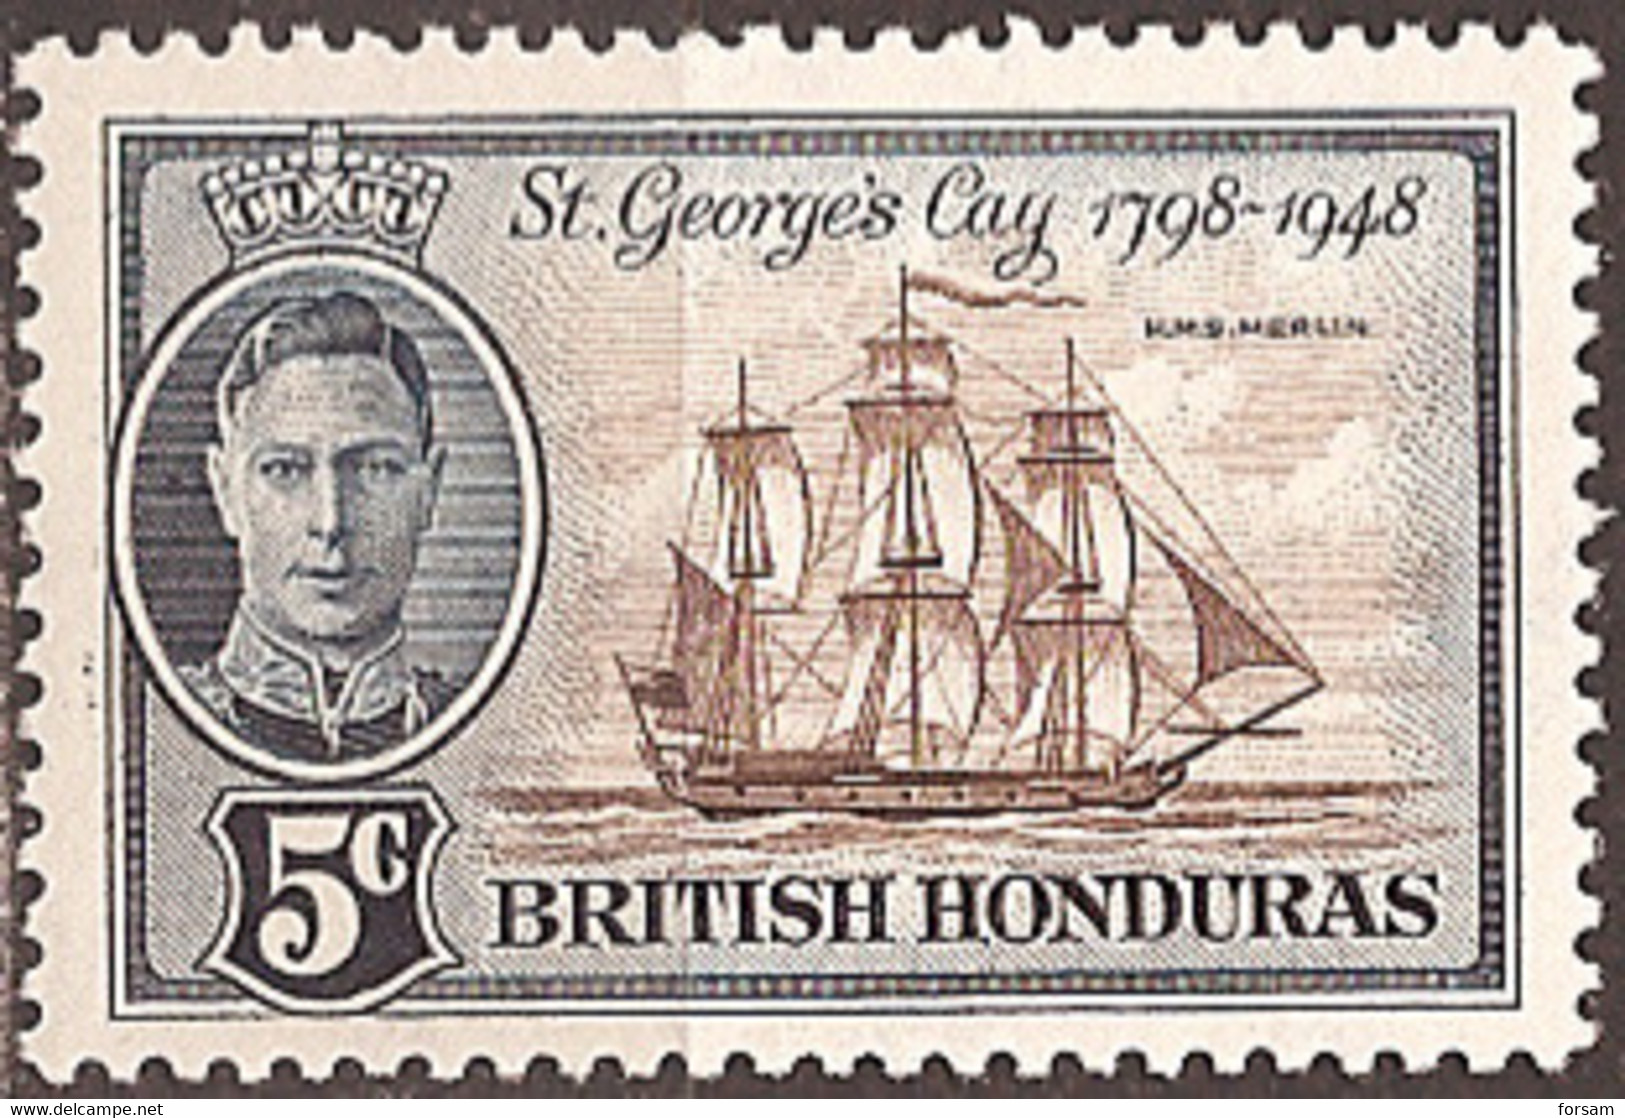 BRITISH HONDURAS..1949..Michel # 131...MLH. - Honduras Británica (...-1970)